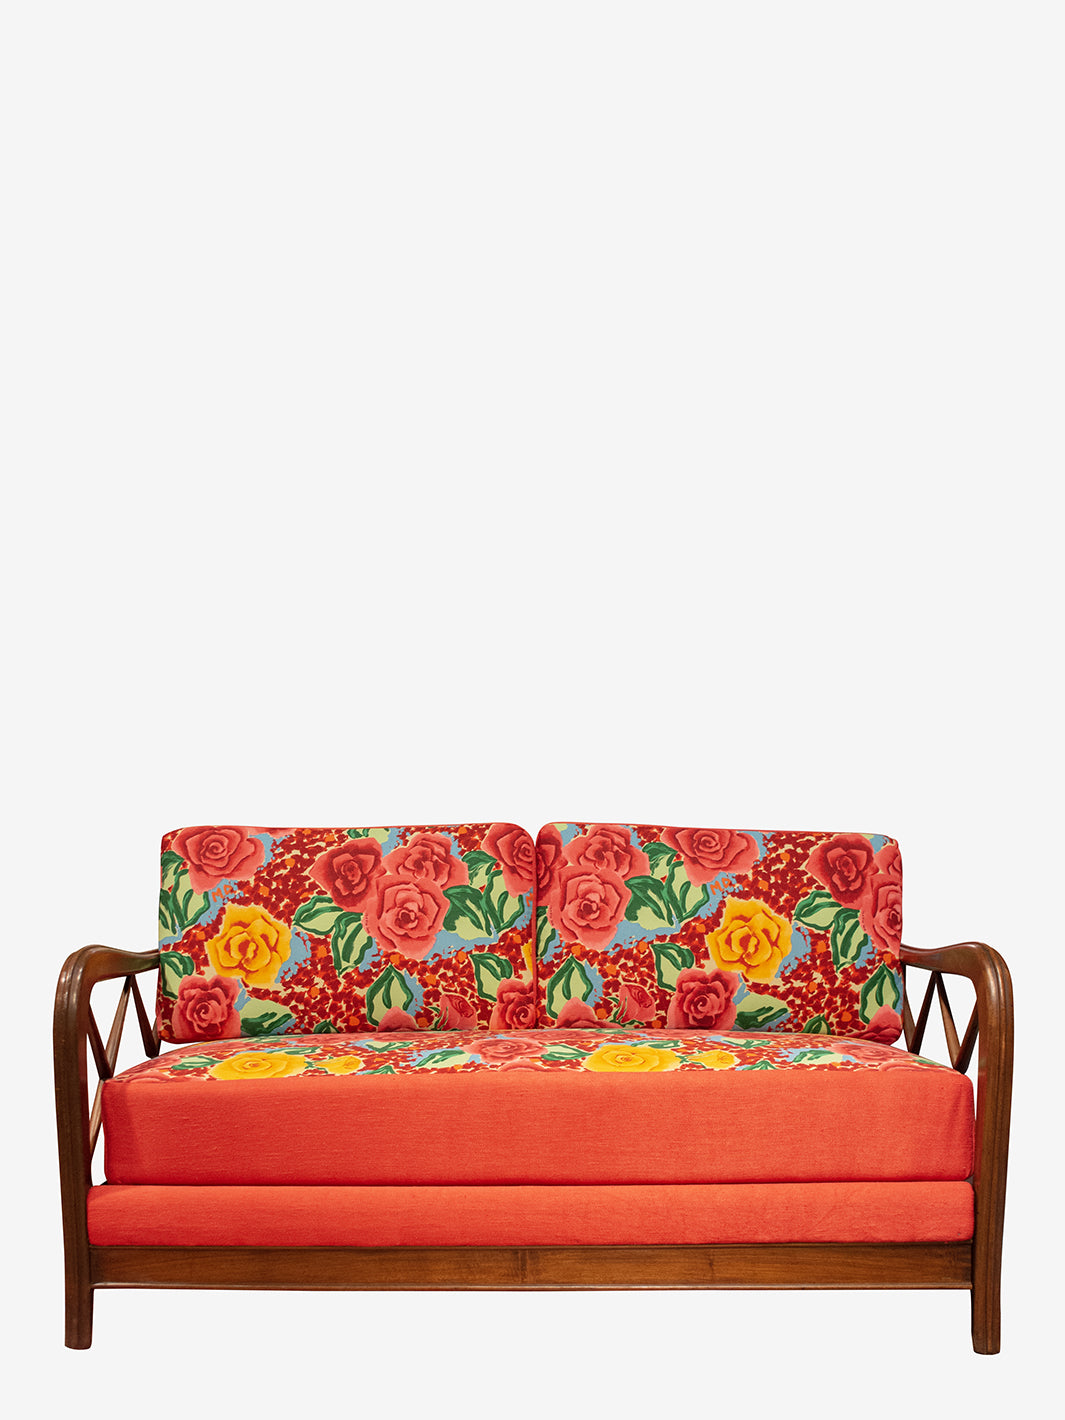 Paolo Buffa sofa bed 1950s